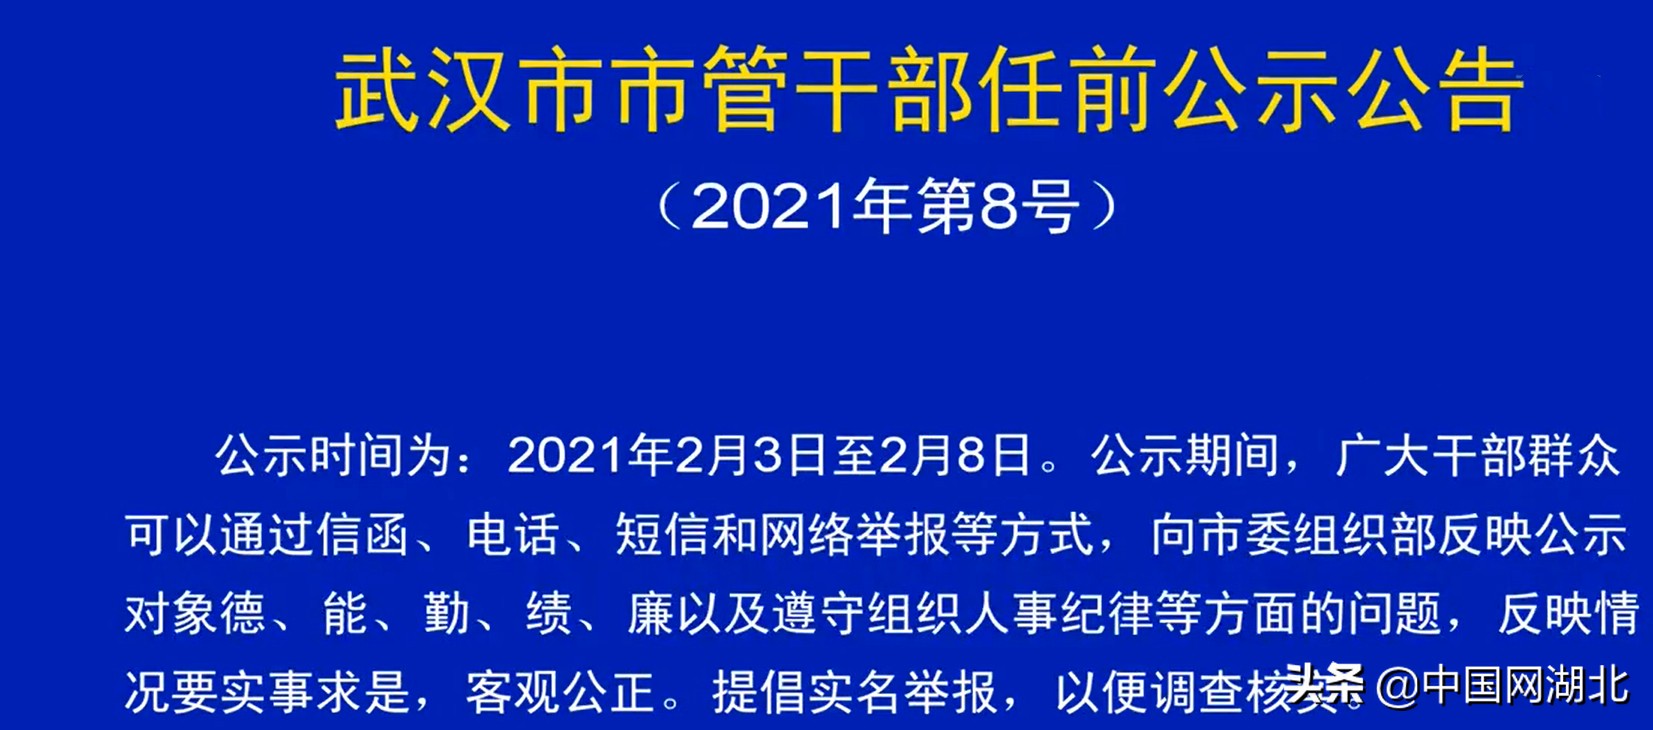 武汉发布最新市管干部任前公示公告2021年第8号